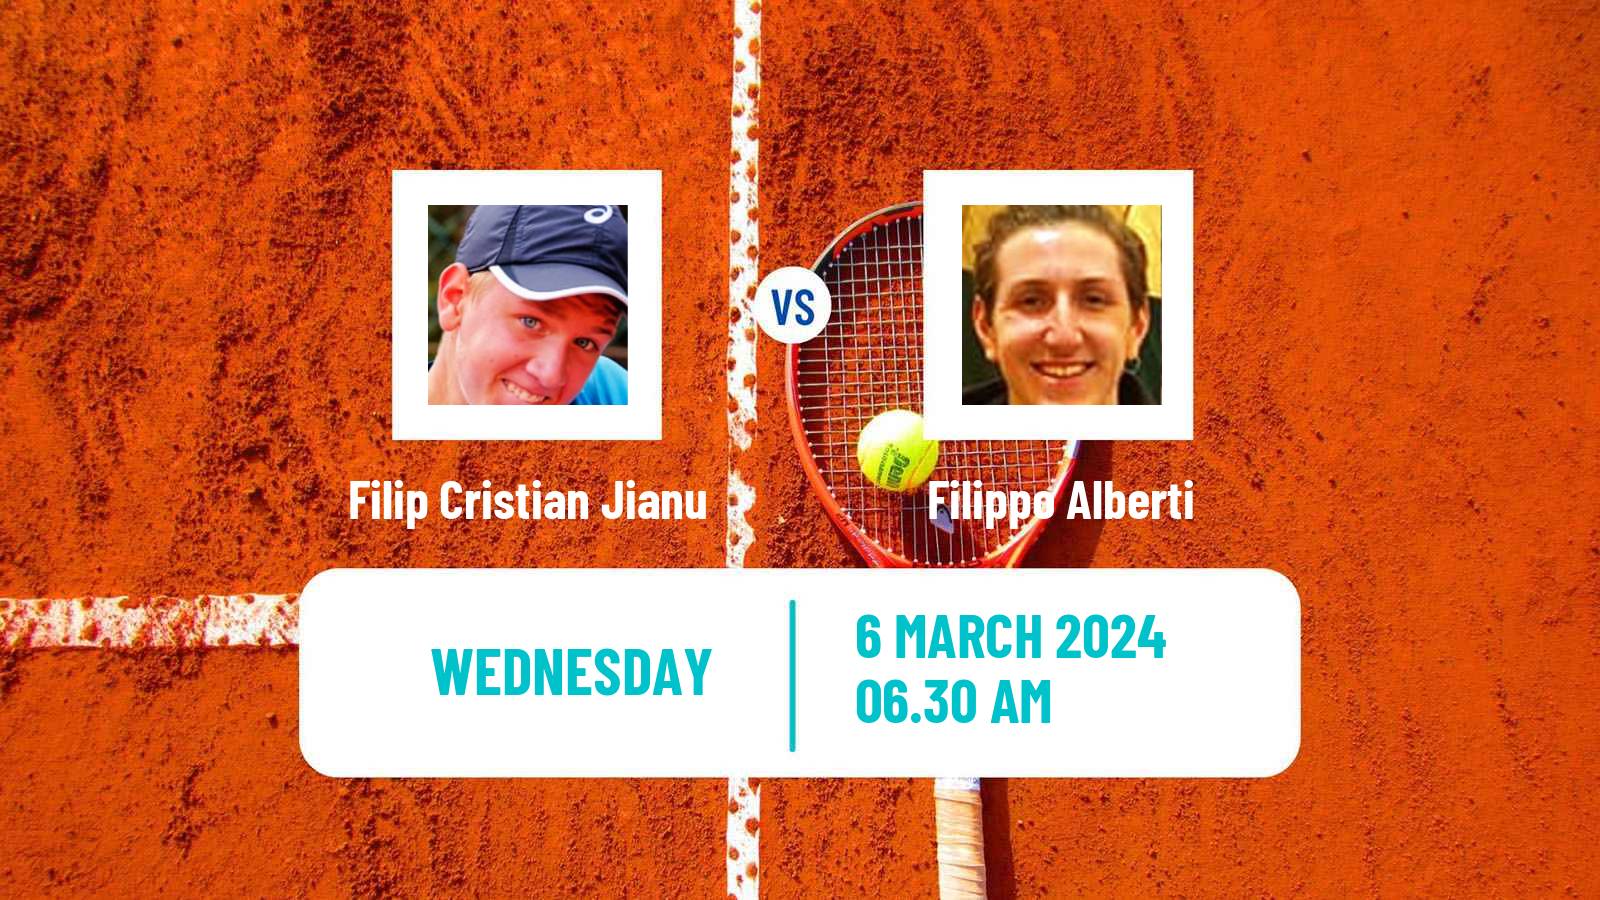 Tennis ITF M15 Kish Island 4 Men Filip Cristian Jianu - Filippo Alberti